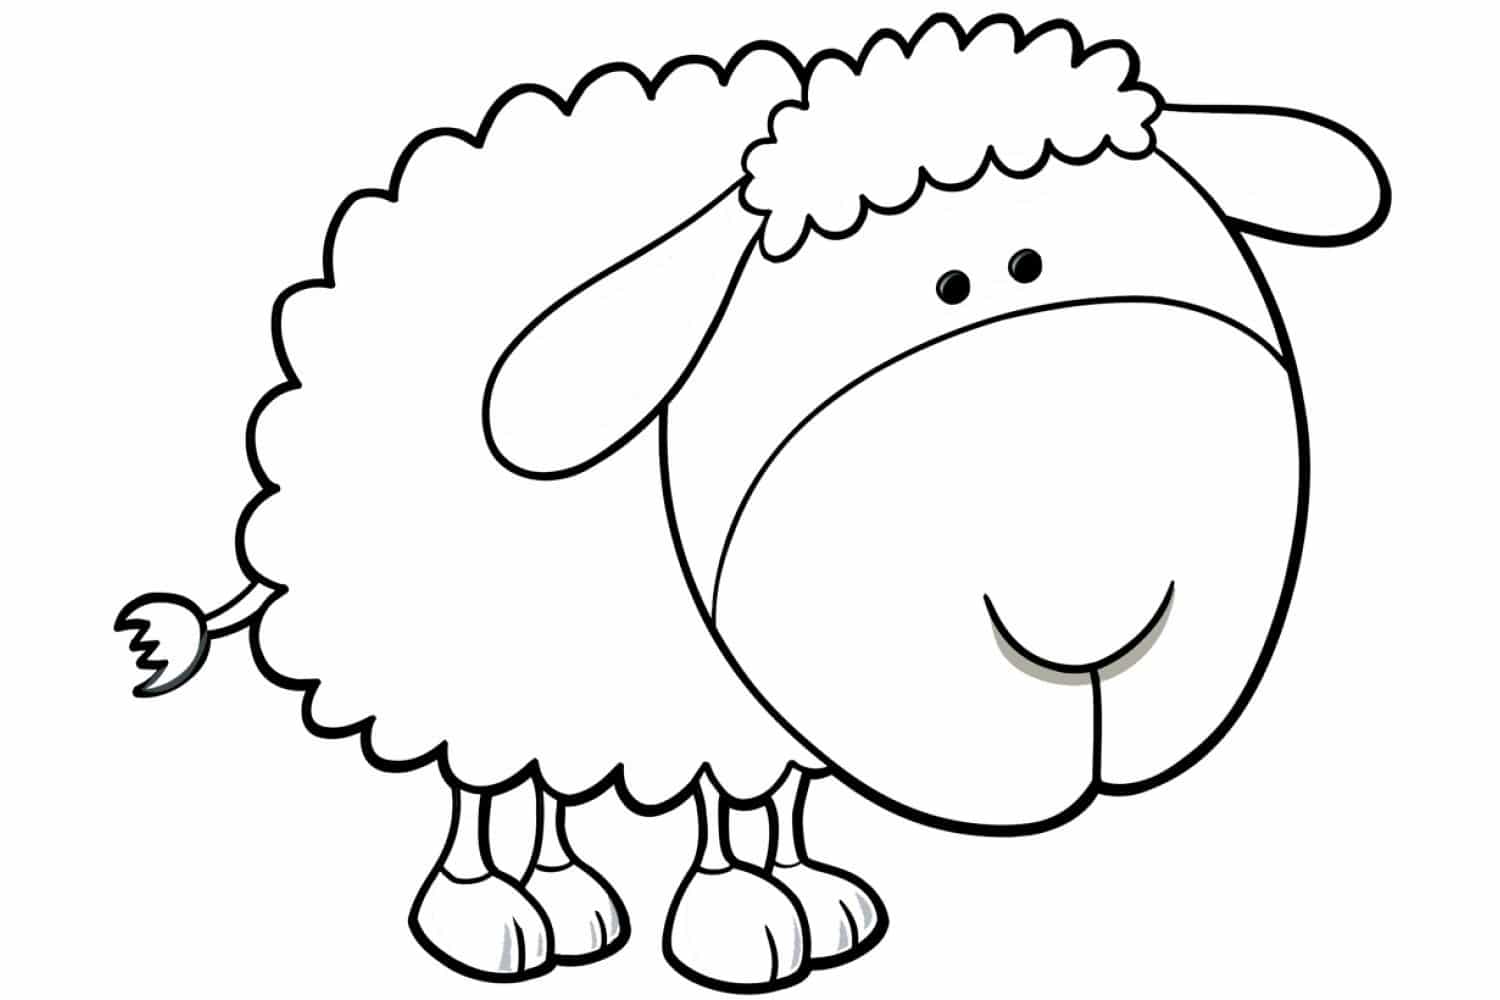 דף צביעה כבשה חמודה עם ראש גדול לצביעה